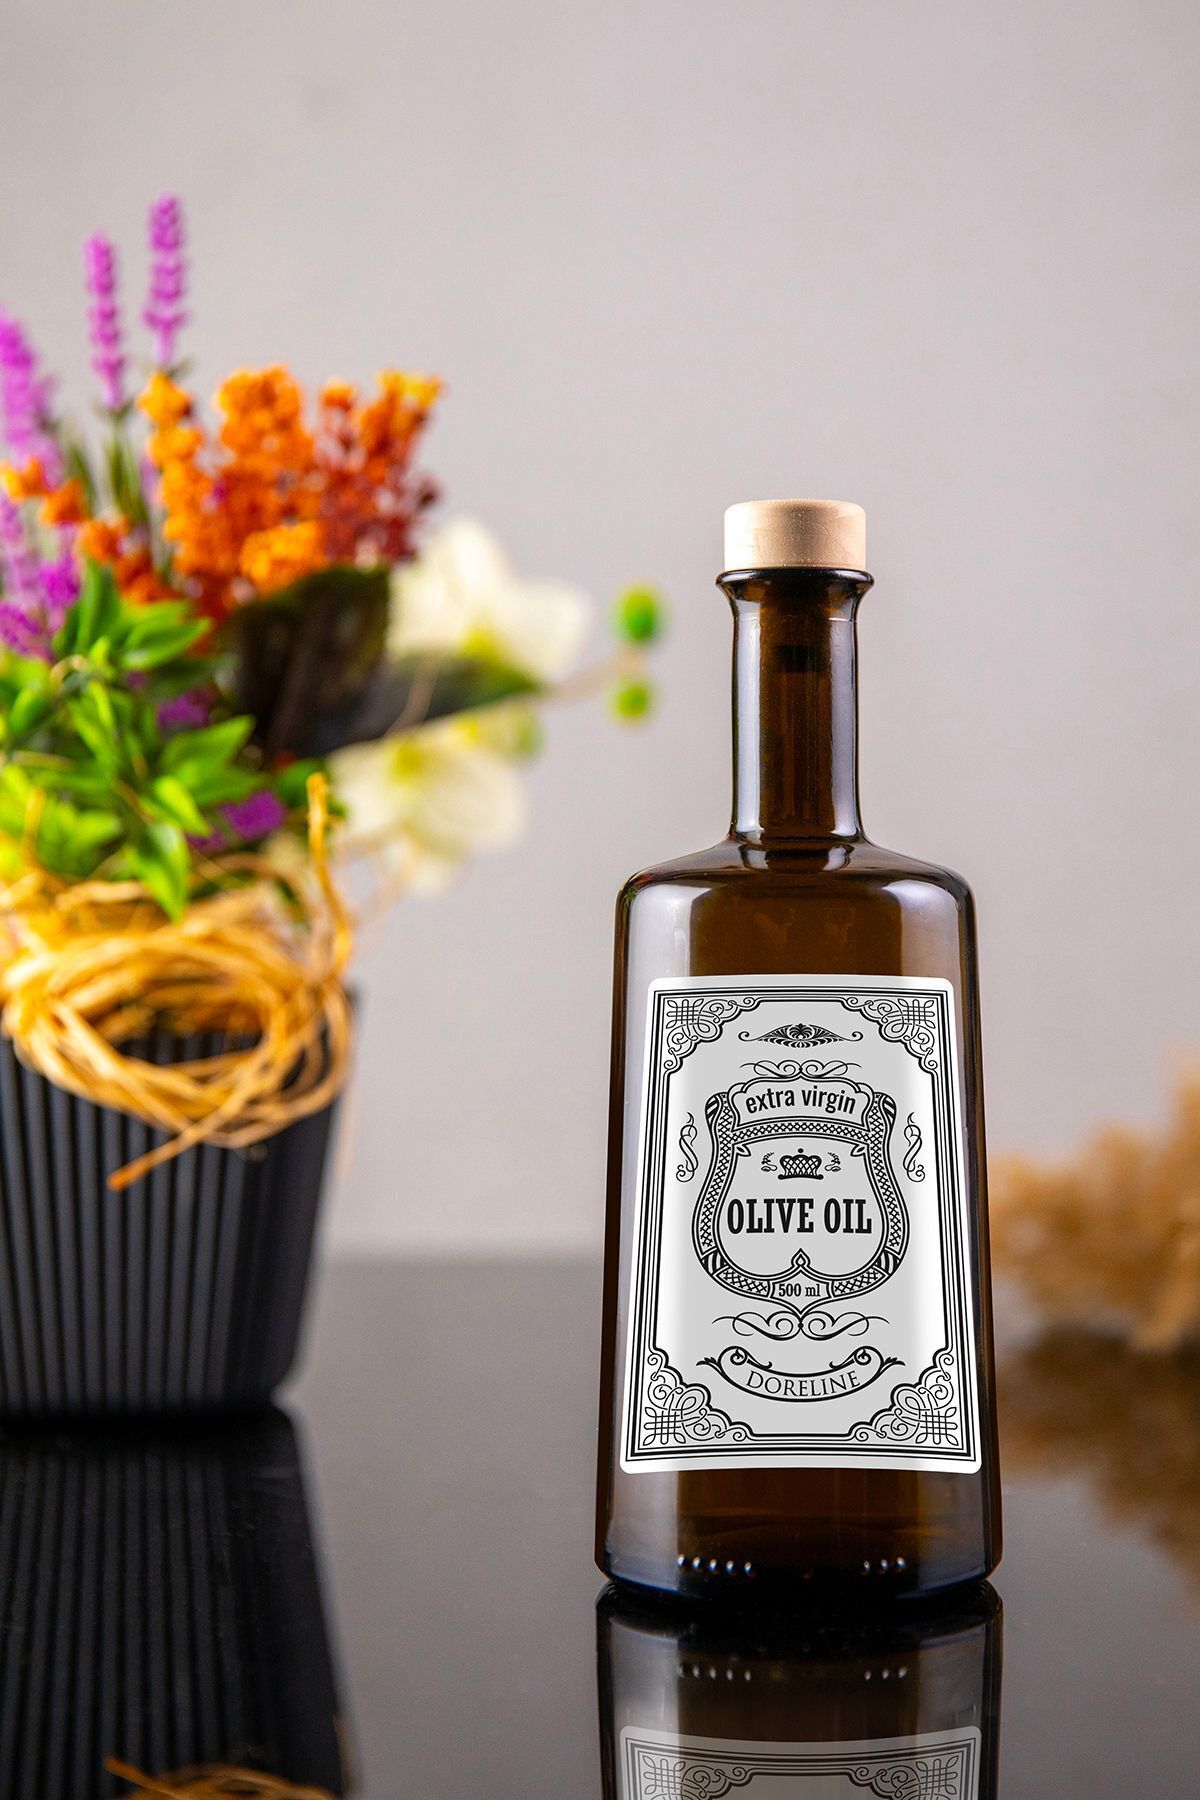 Doreline 500 Ml Silver İtalyan Zeytin Yağı Cam Yağdanlık Vintage Yağlık, Olive Oil